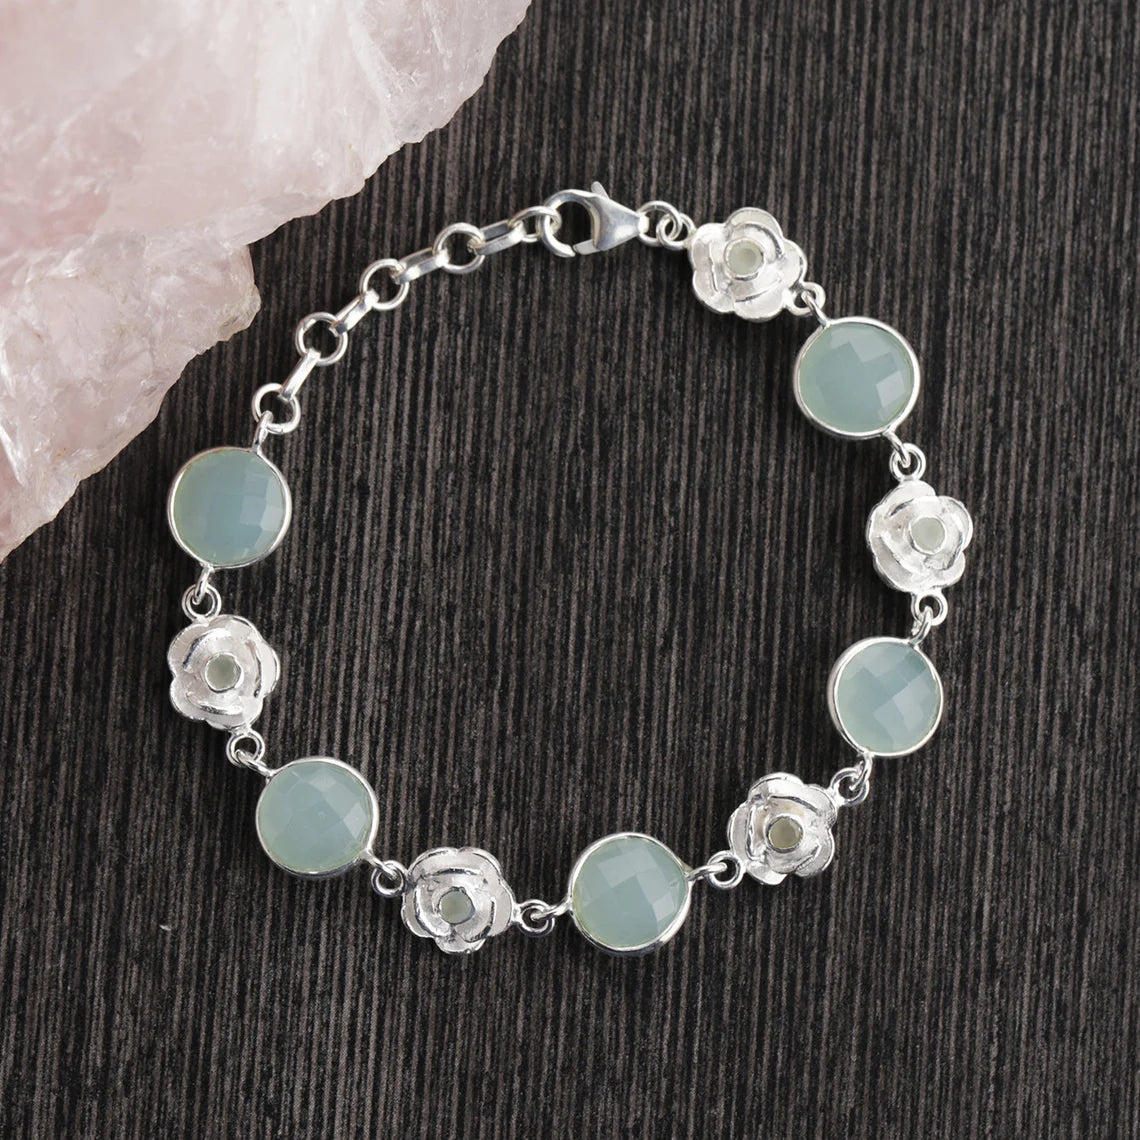 Aqua Chalcedony Bracelet, 925 Sterling Silver Bracelet, Handmade Bracelet, Gift for her, Boho Jewelry